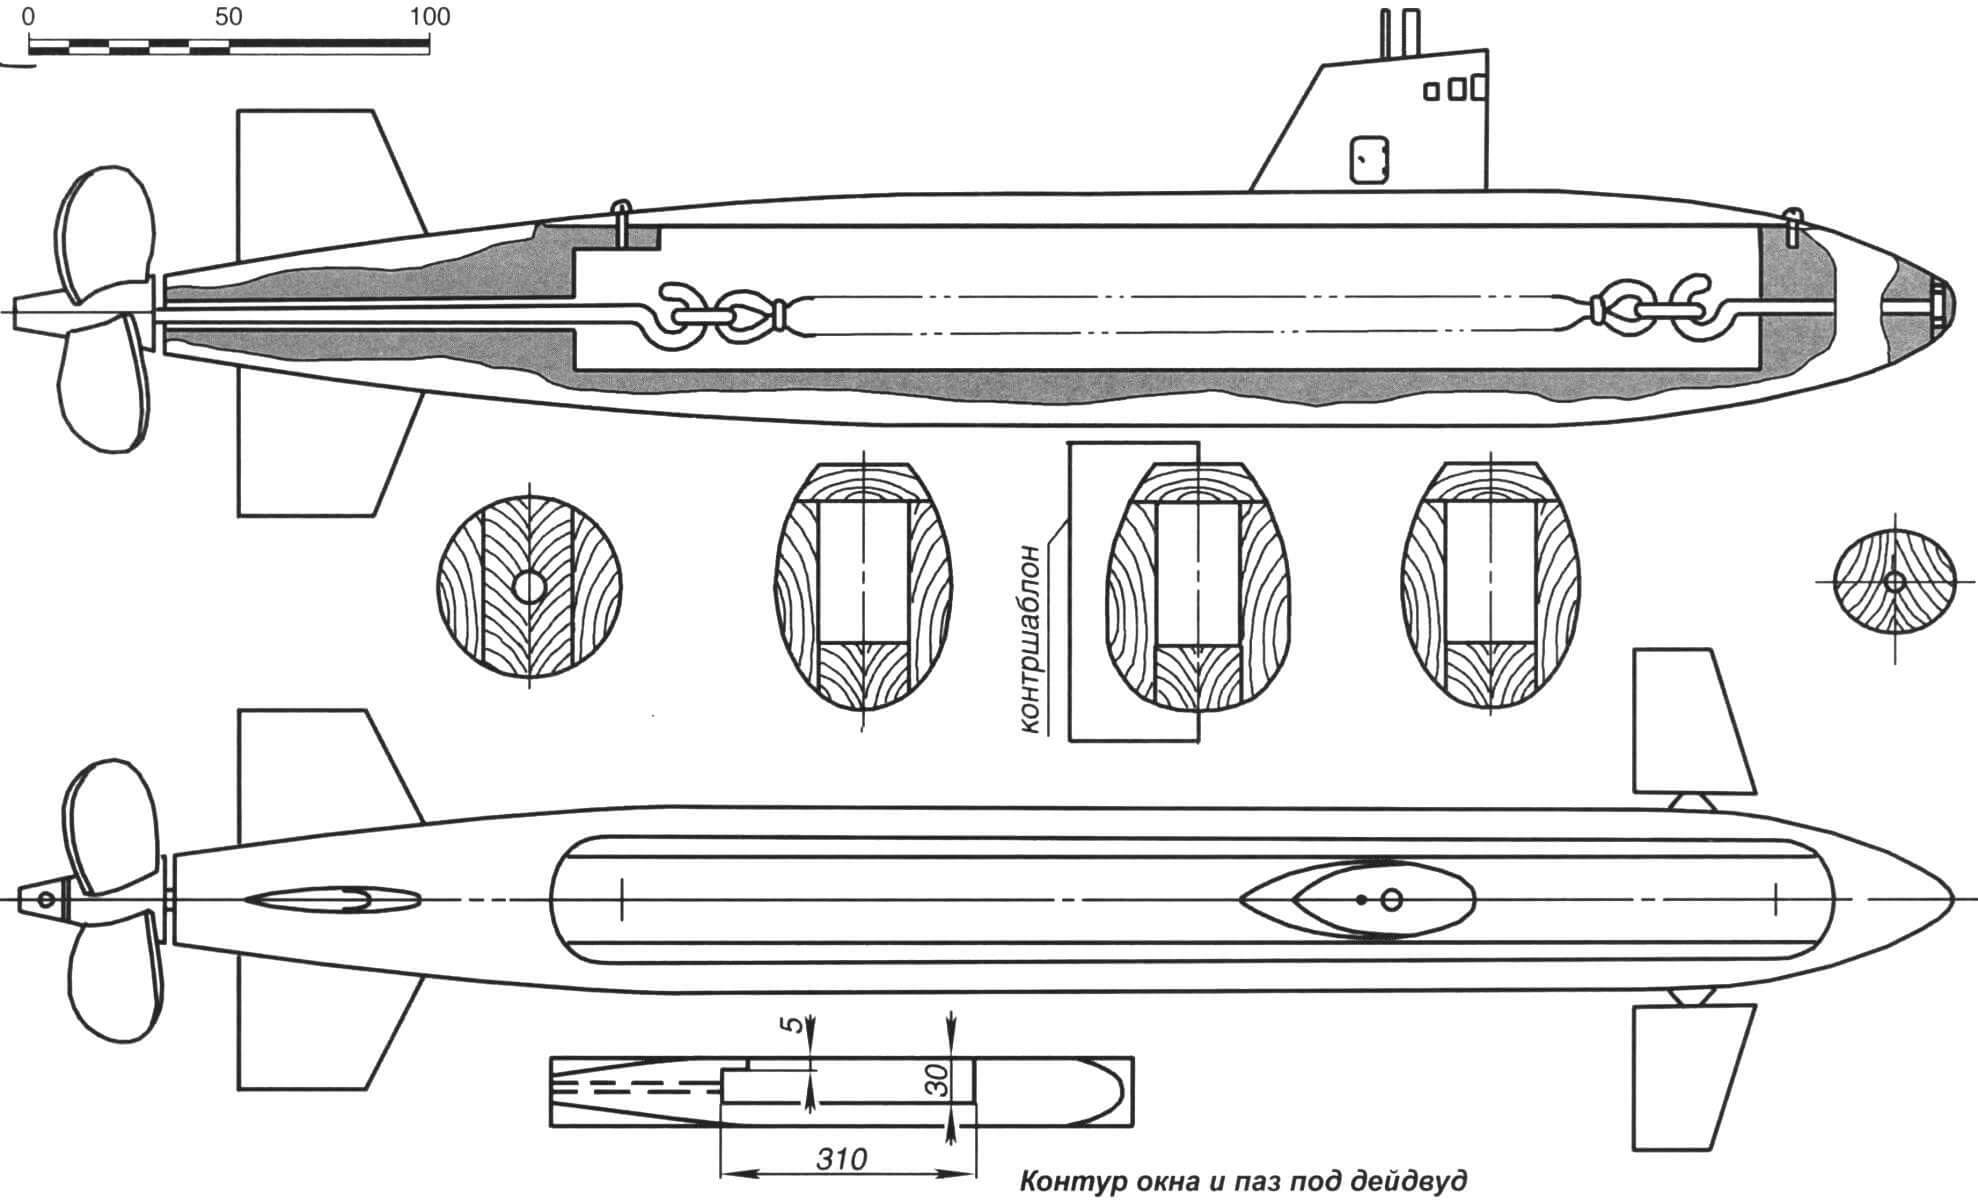 Модель подводной лодки длиной до 500 мм с резиномотором